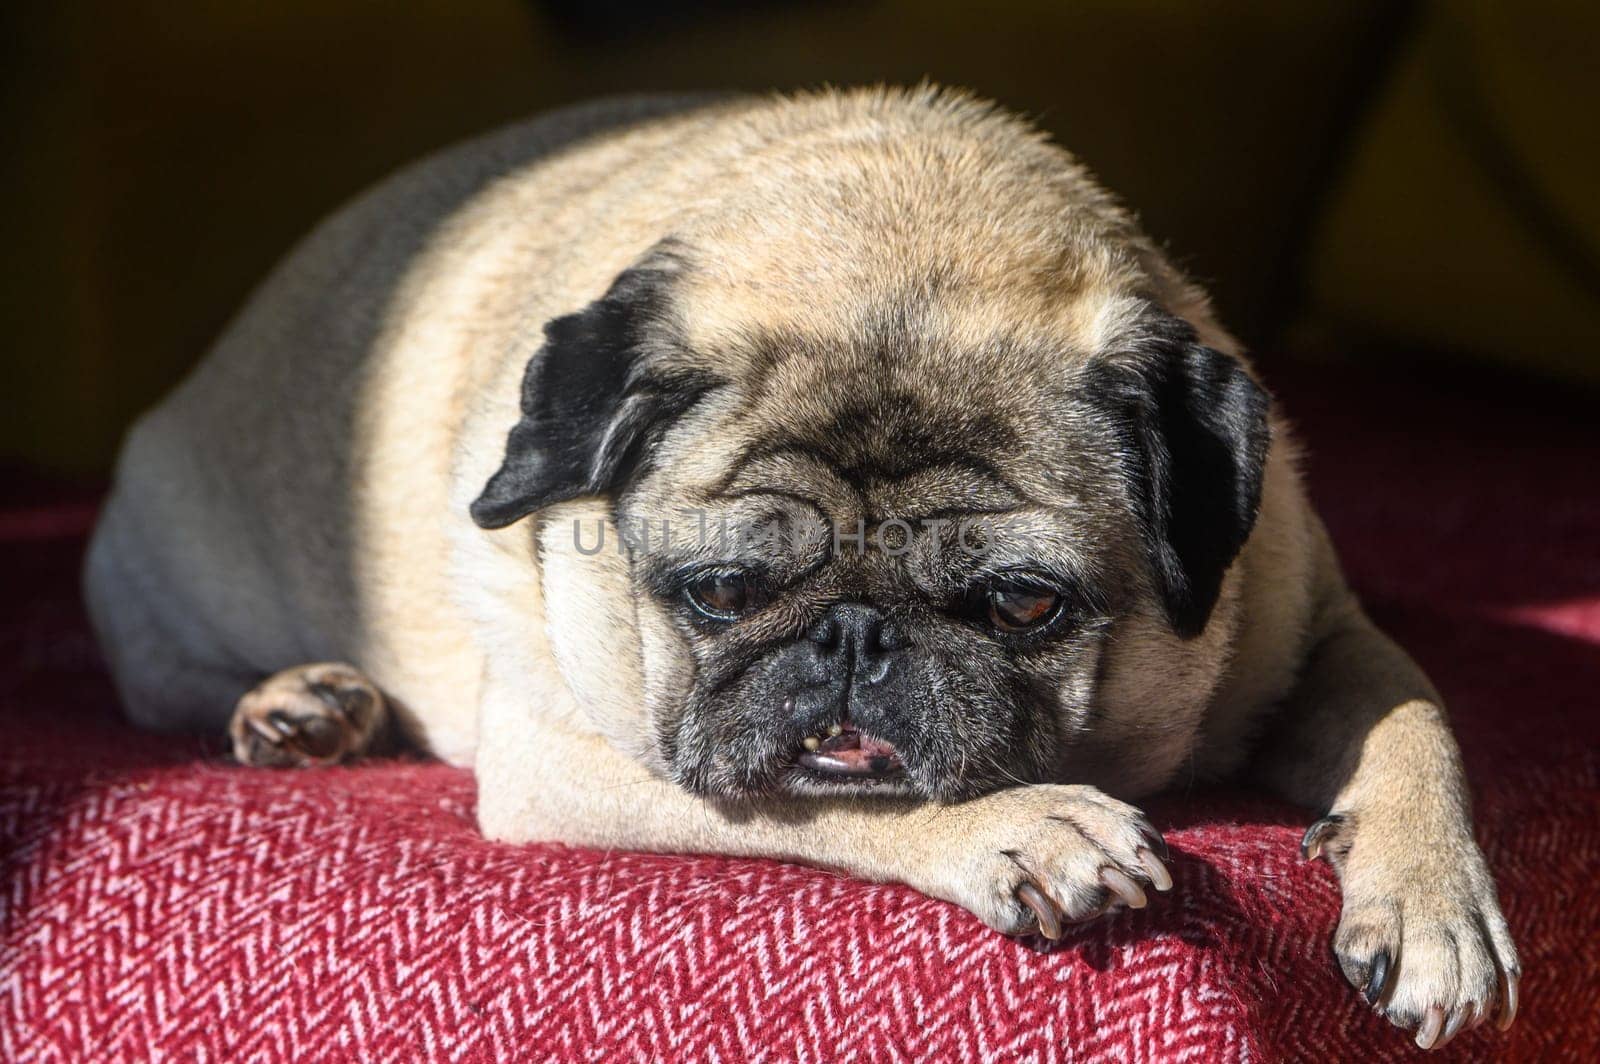 An old pug sleeps on a red sofa.3